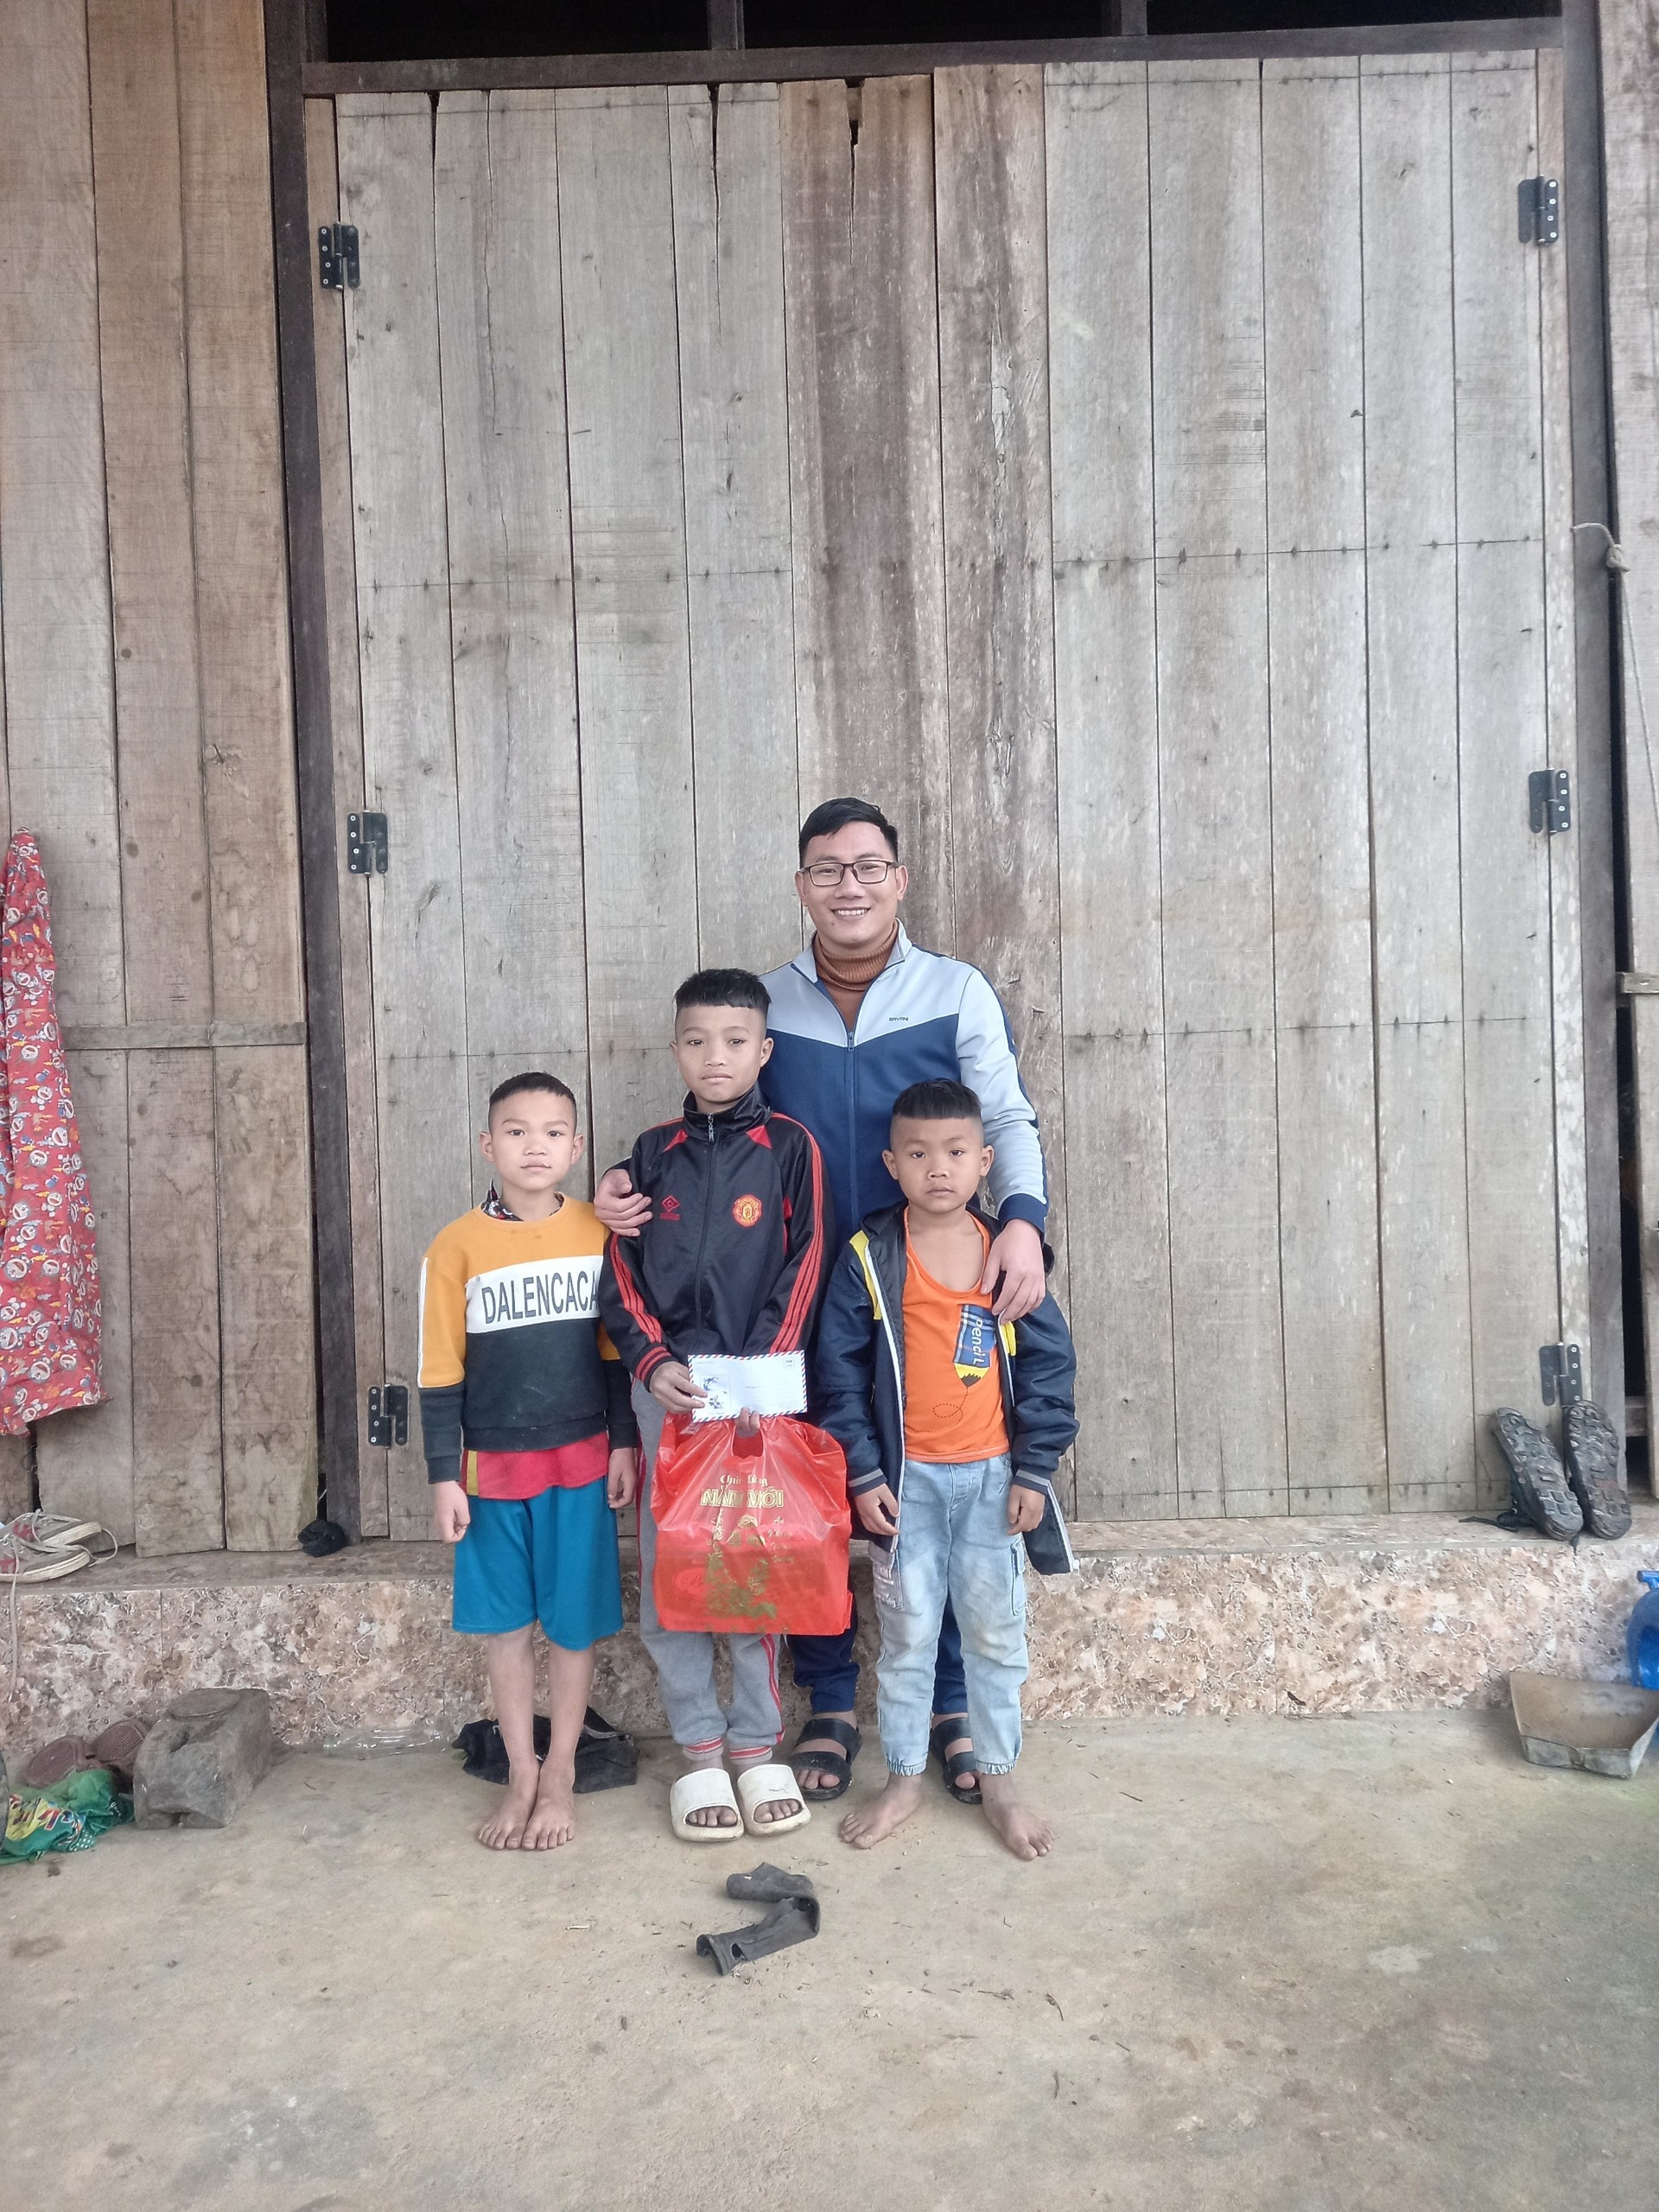 Thầy giáo Trần Mạnh Hùng: Hành trình đem con chữ lên vùng cao biên giới